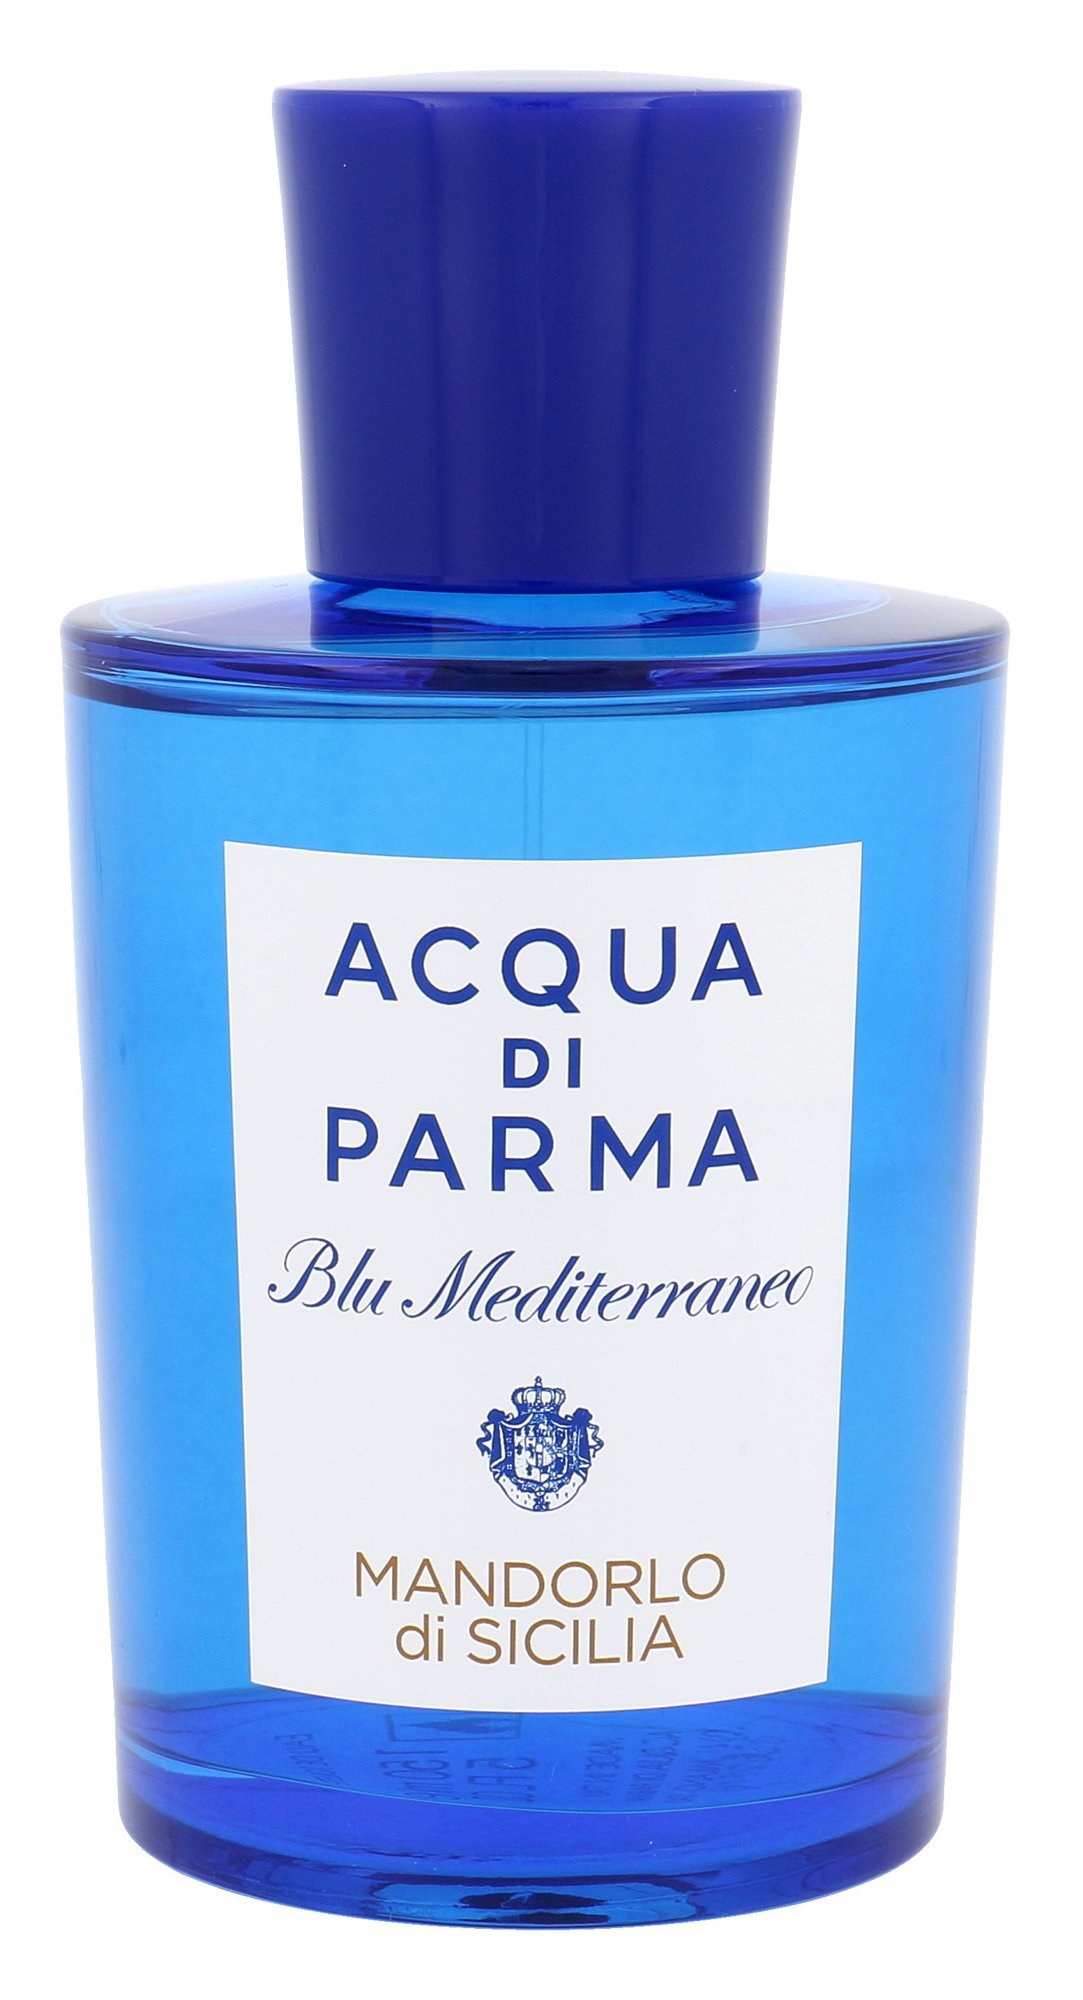 Acqua Di Parma Blu Mediterraneo Mandorlo di Sicilia